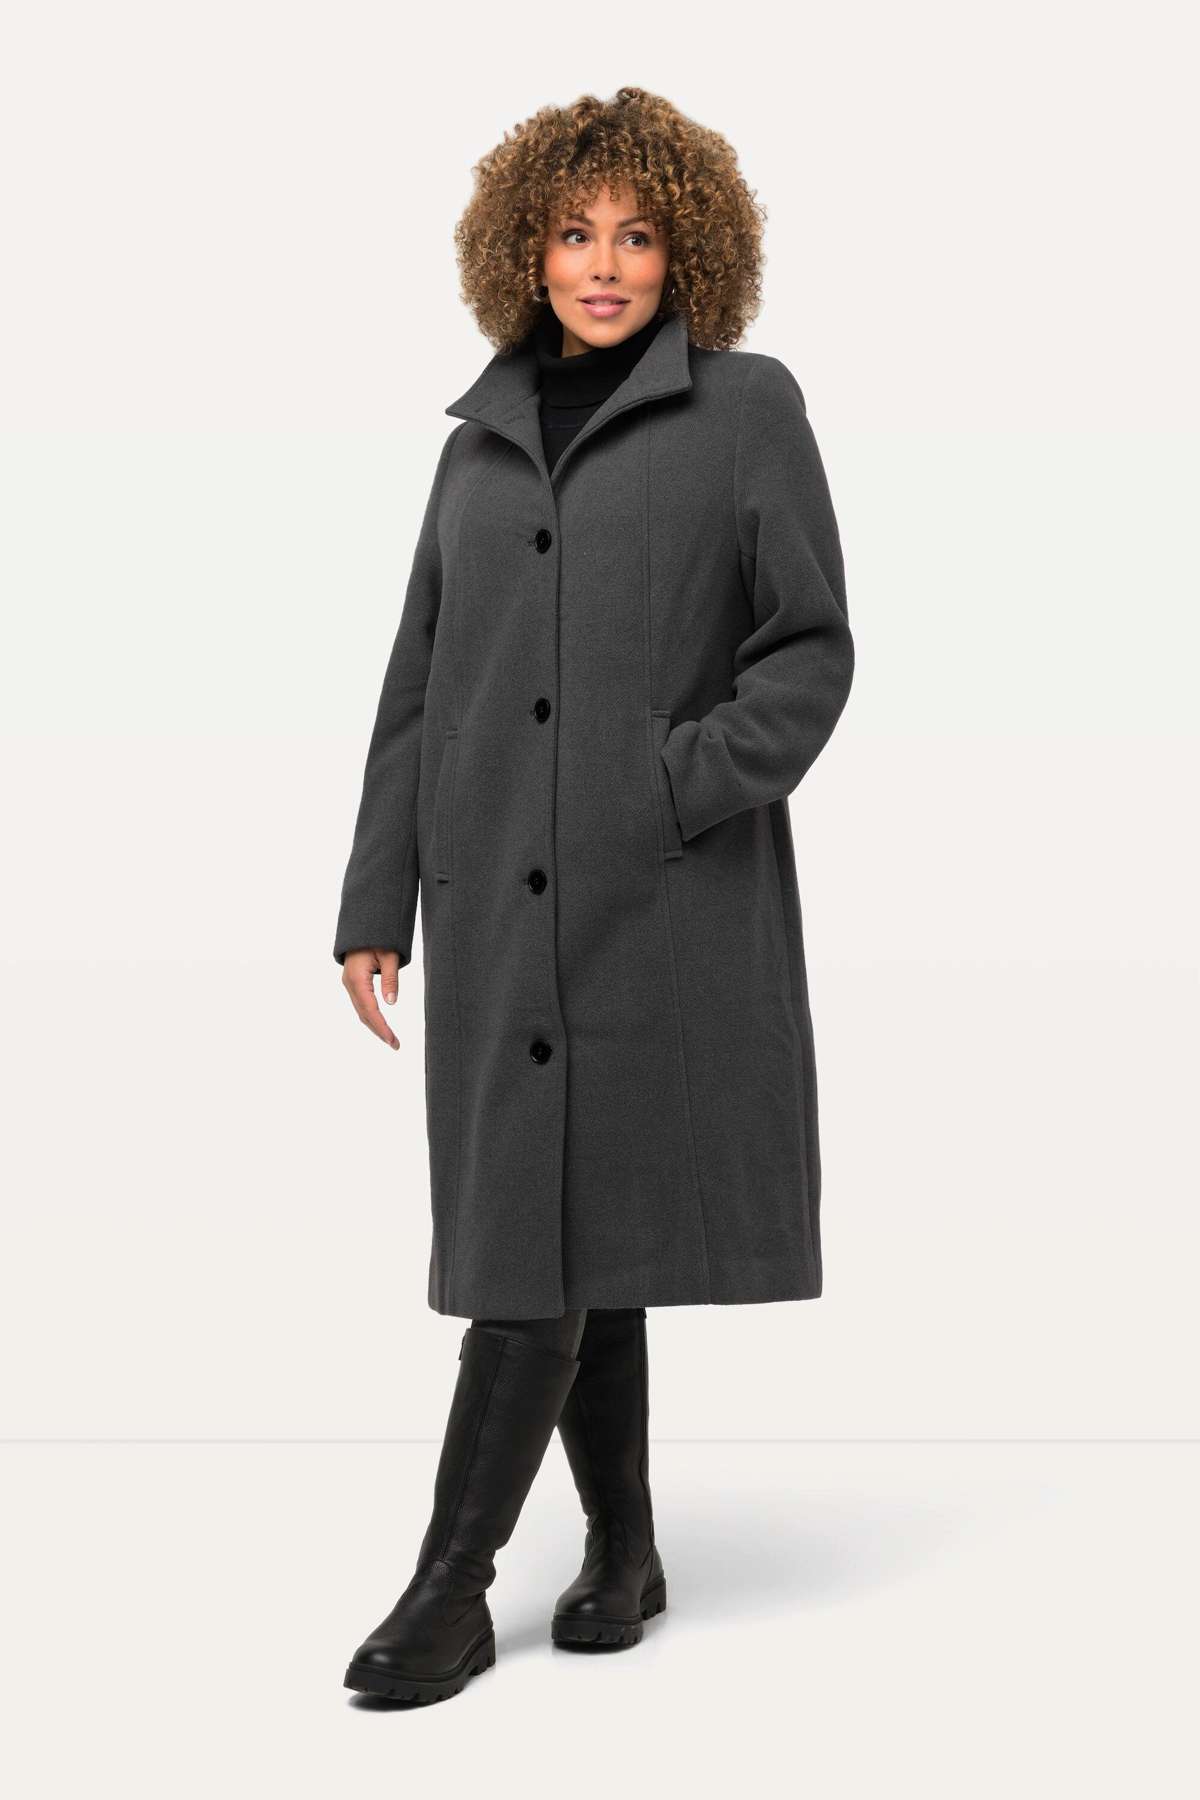 Шерстяное пальто, пальто с воротником-стойкой, качественная шерсть, на полной подкладке